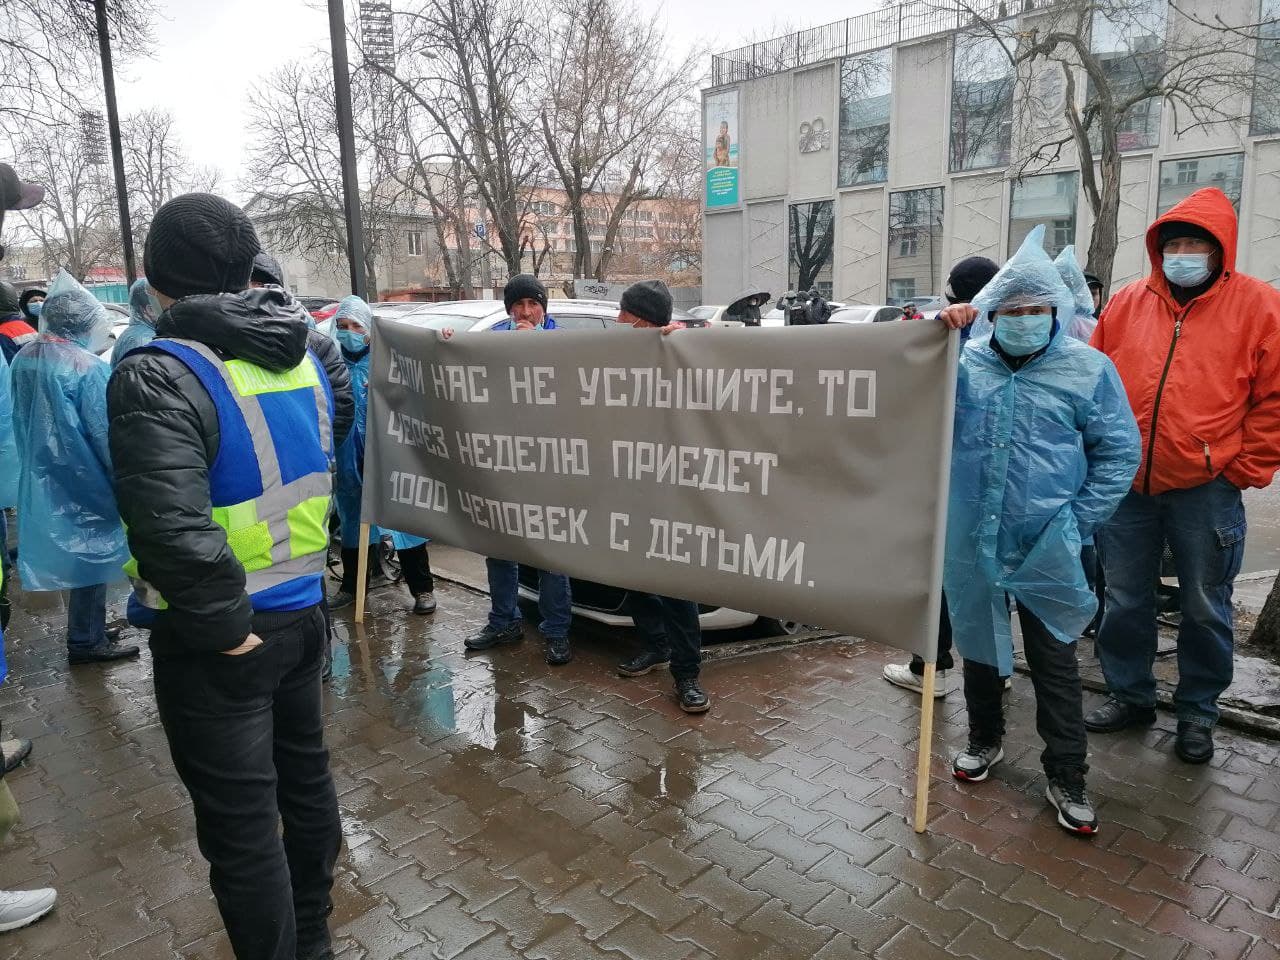 Митинг завод. Протесты в Одессе. Протесты в Одессе 2014. Протест около завода. Антимайданые протесты в Одессе.